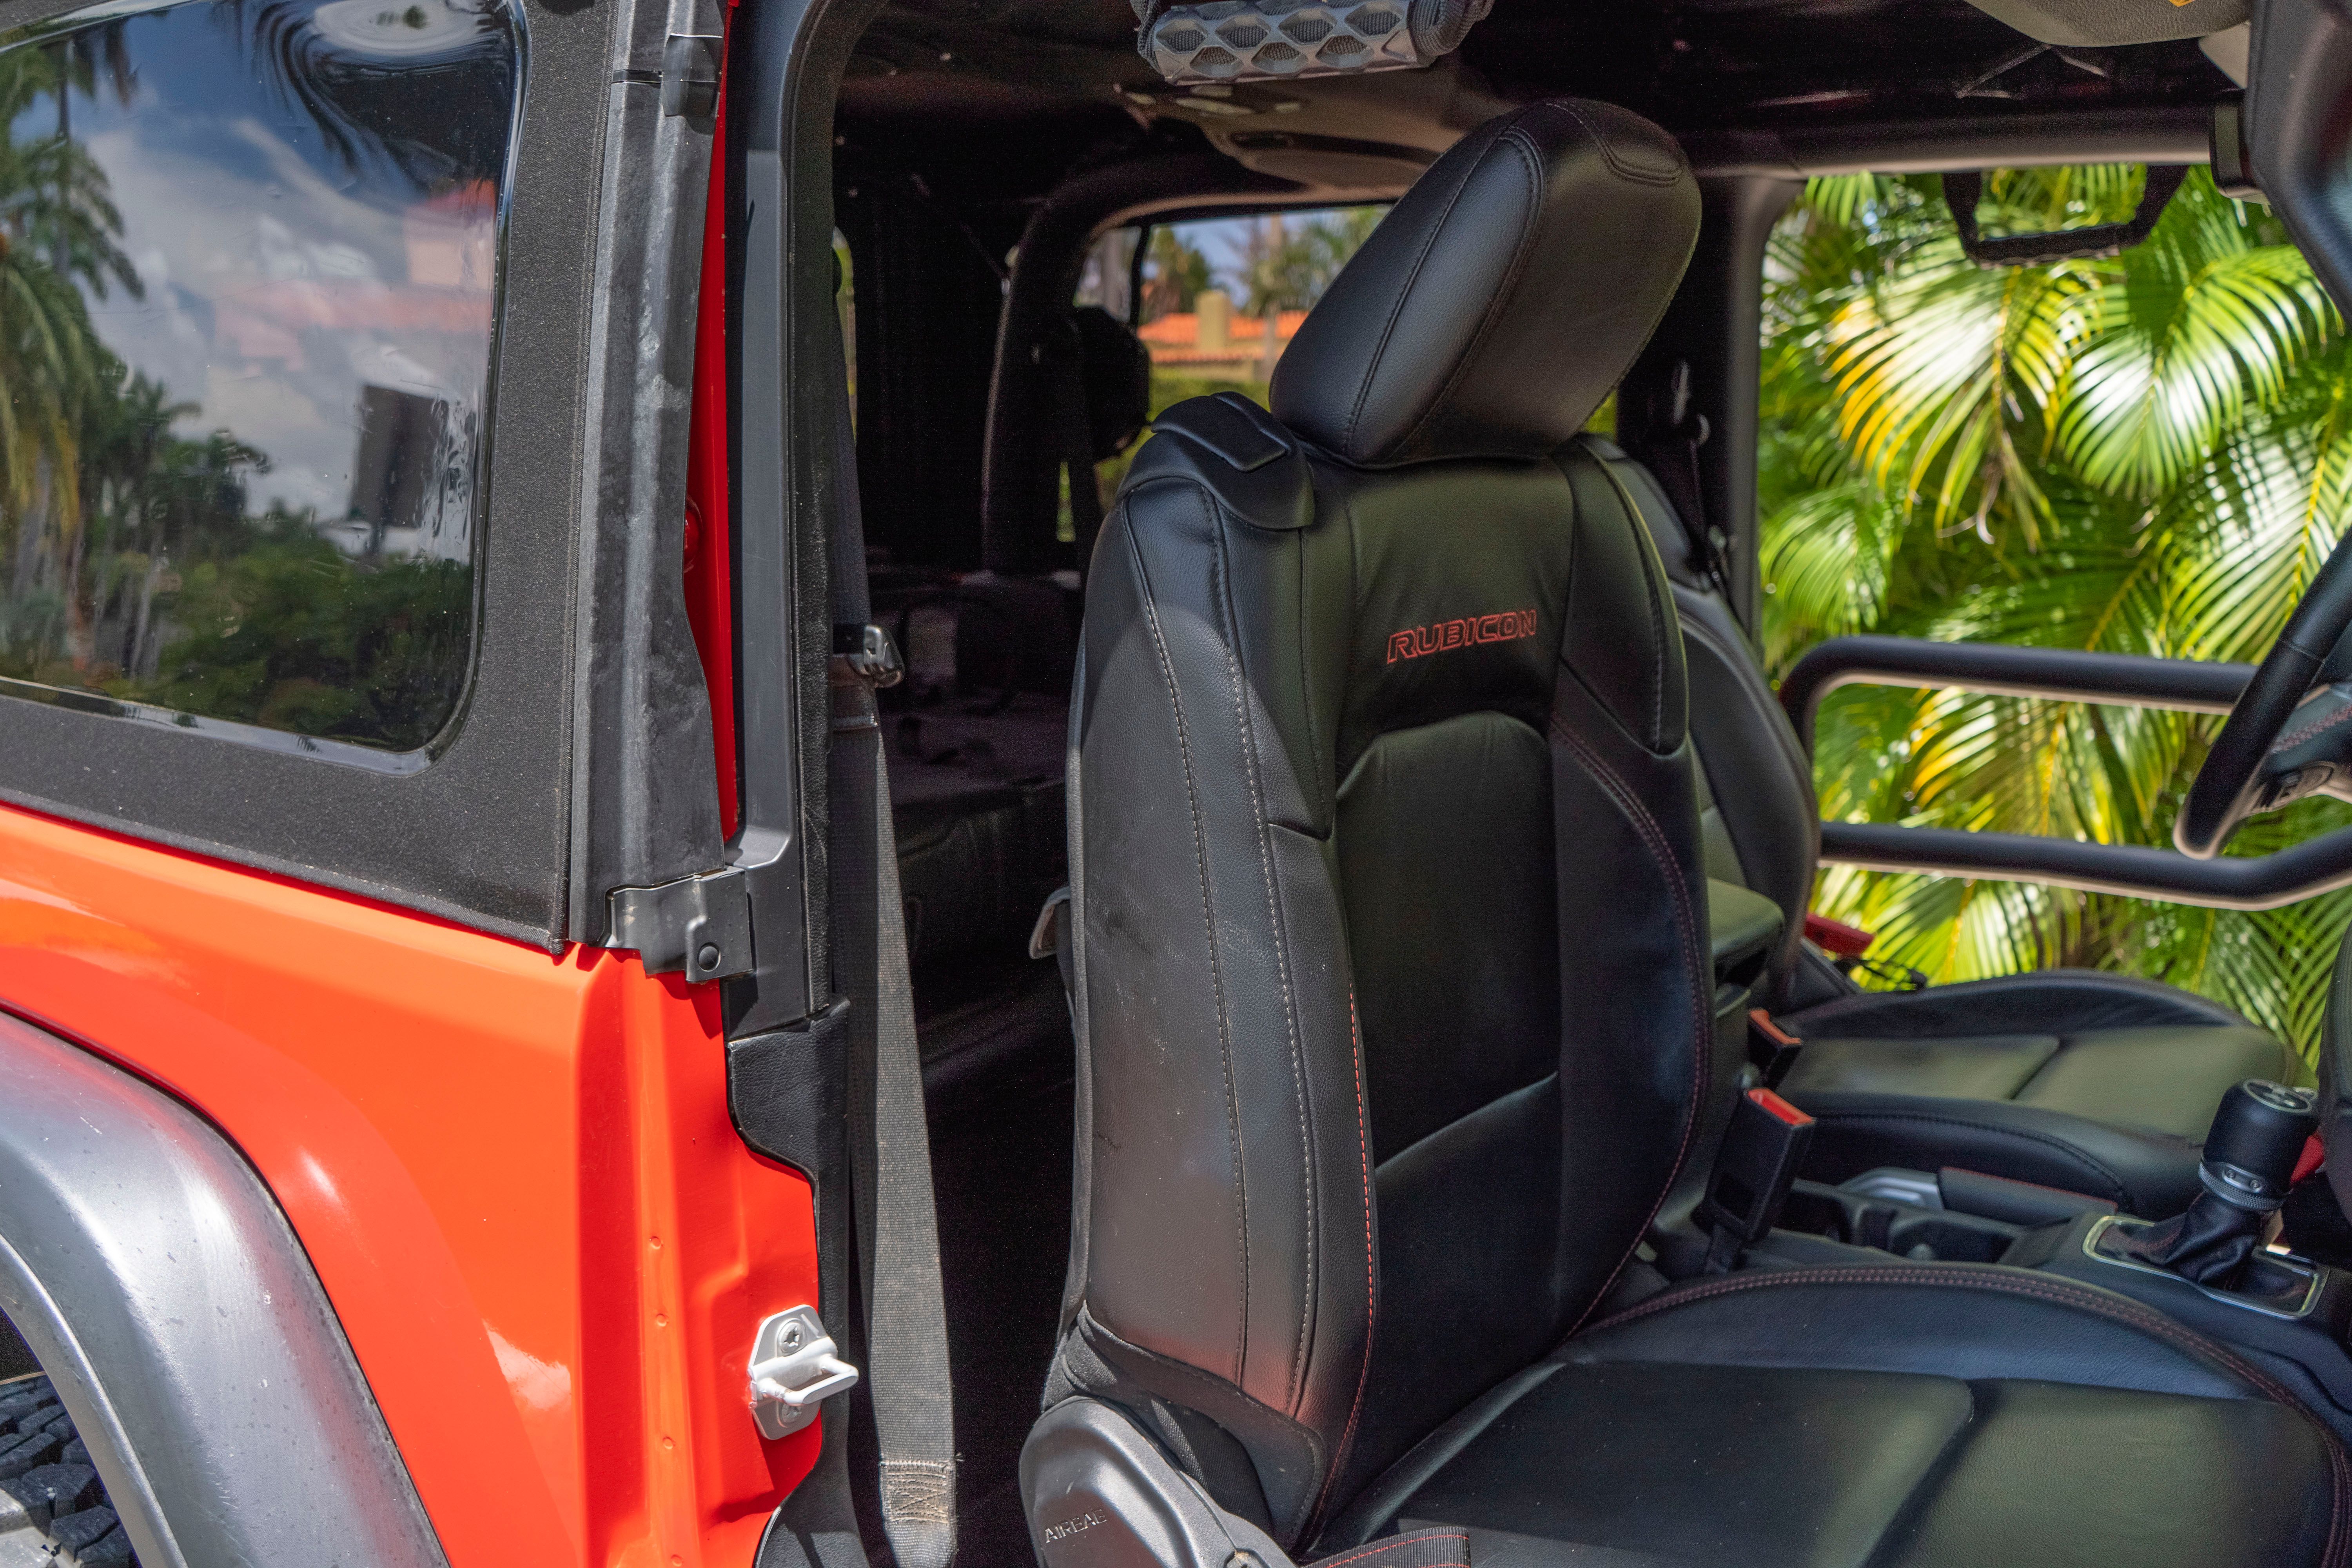 2019 Jeep Wrangler Rubicon MOPAR - Driven